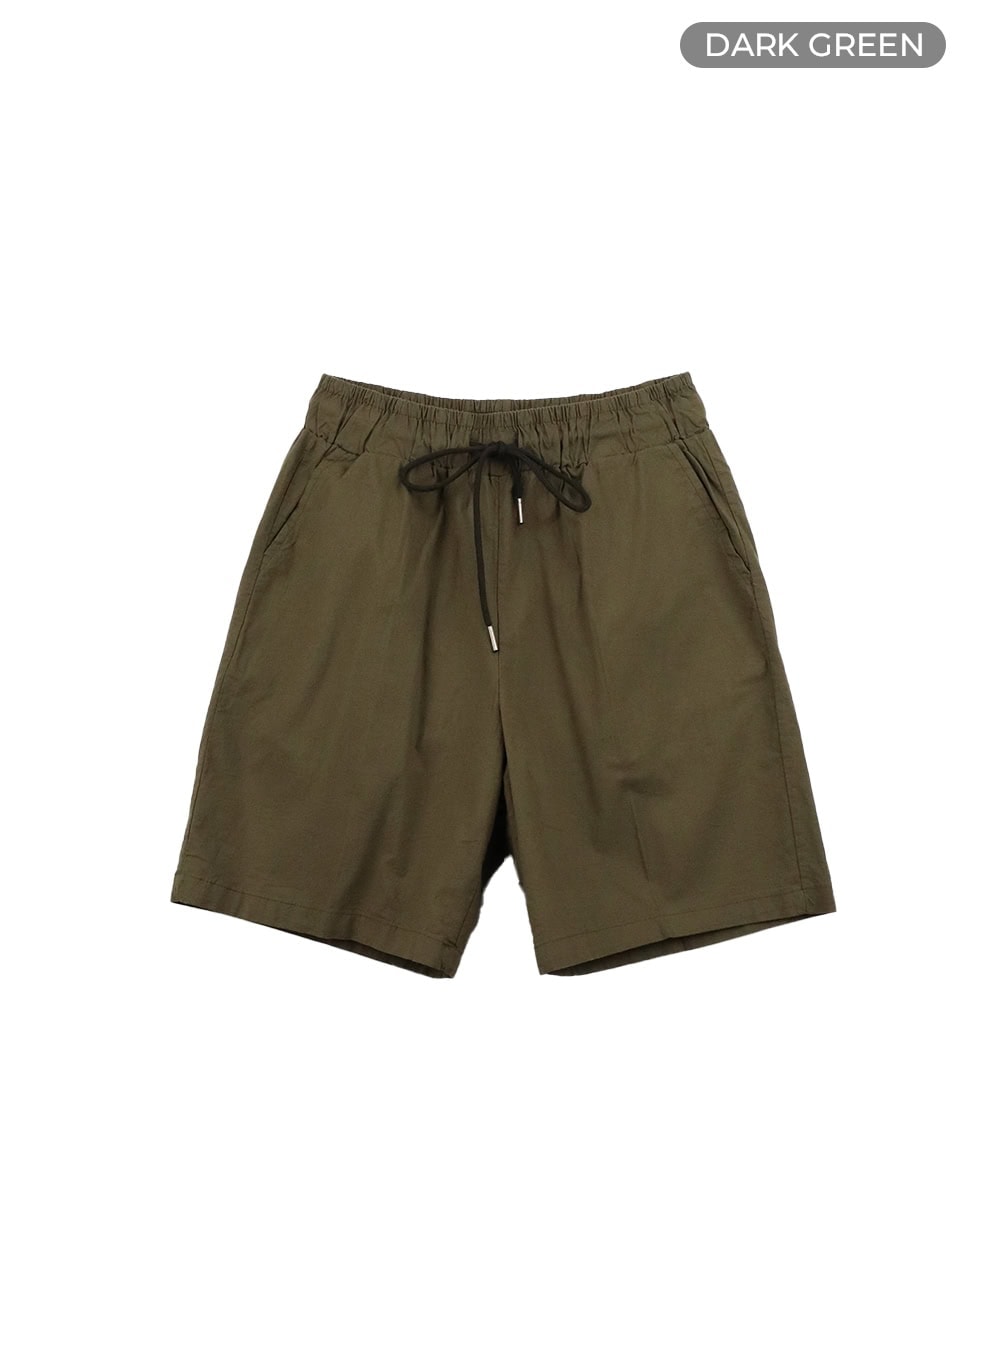 mens-linen-banded-shorts-iy416 / Dark green